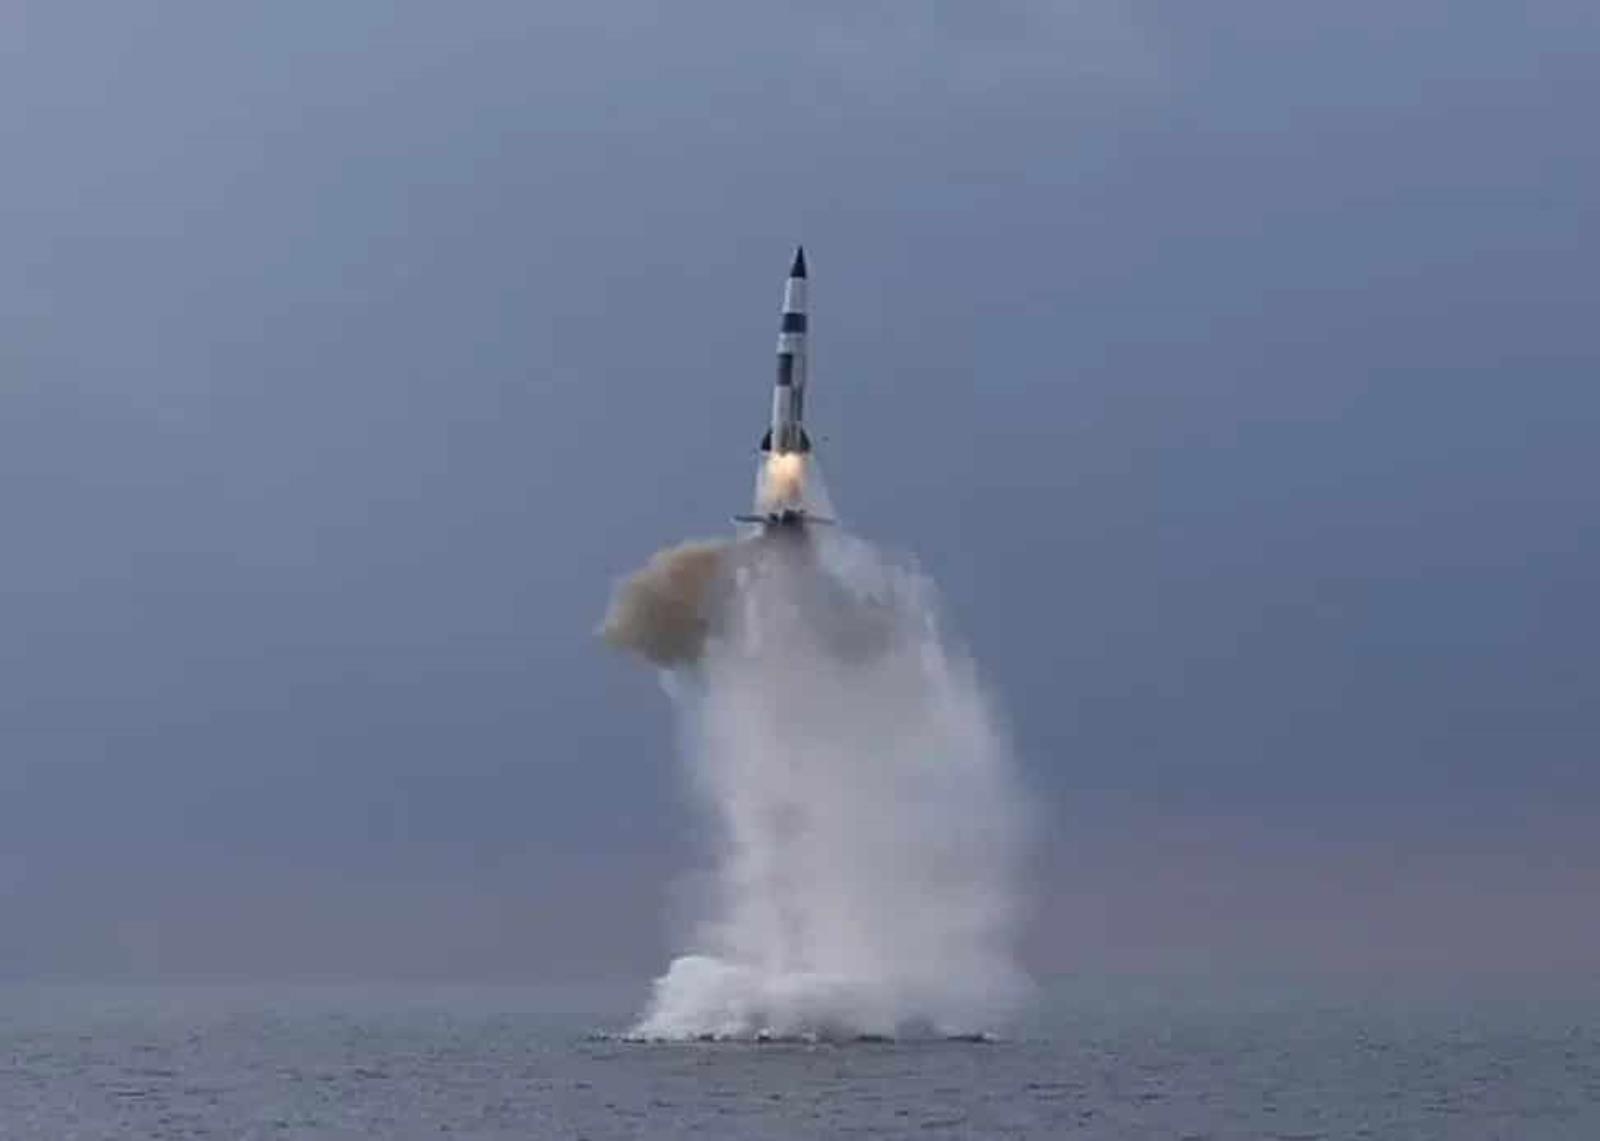 Północnokoreański balistyczny pocisk wystrzelony z okrętu podwodnego. To kolejna wiadomość do “Zgniłego Zachodu”